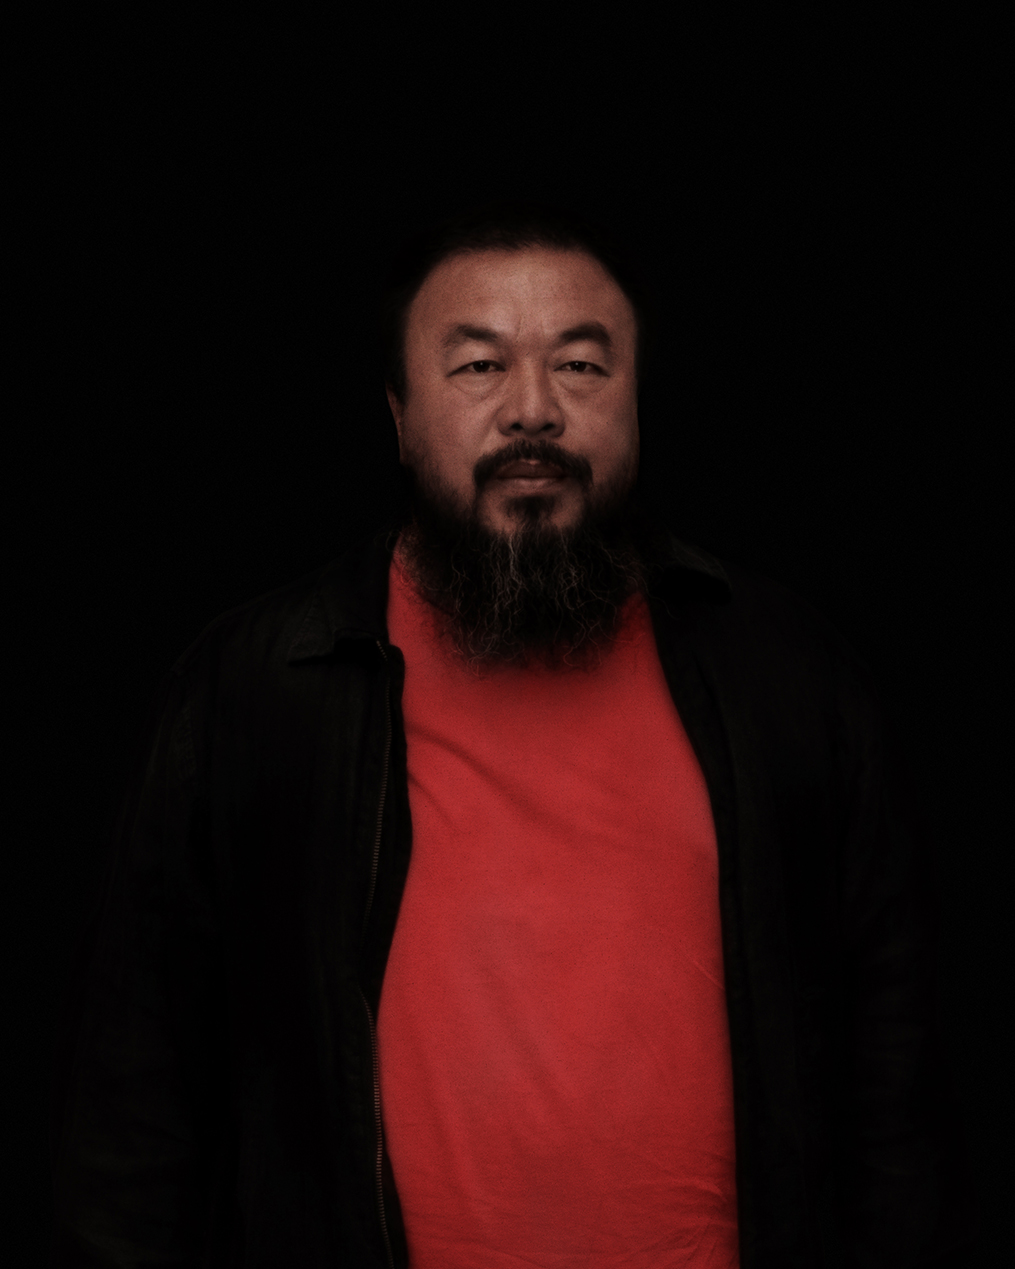 Portrait Ai Weiwei